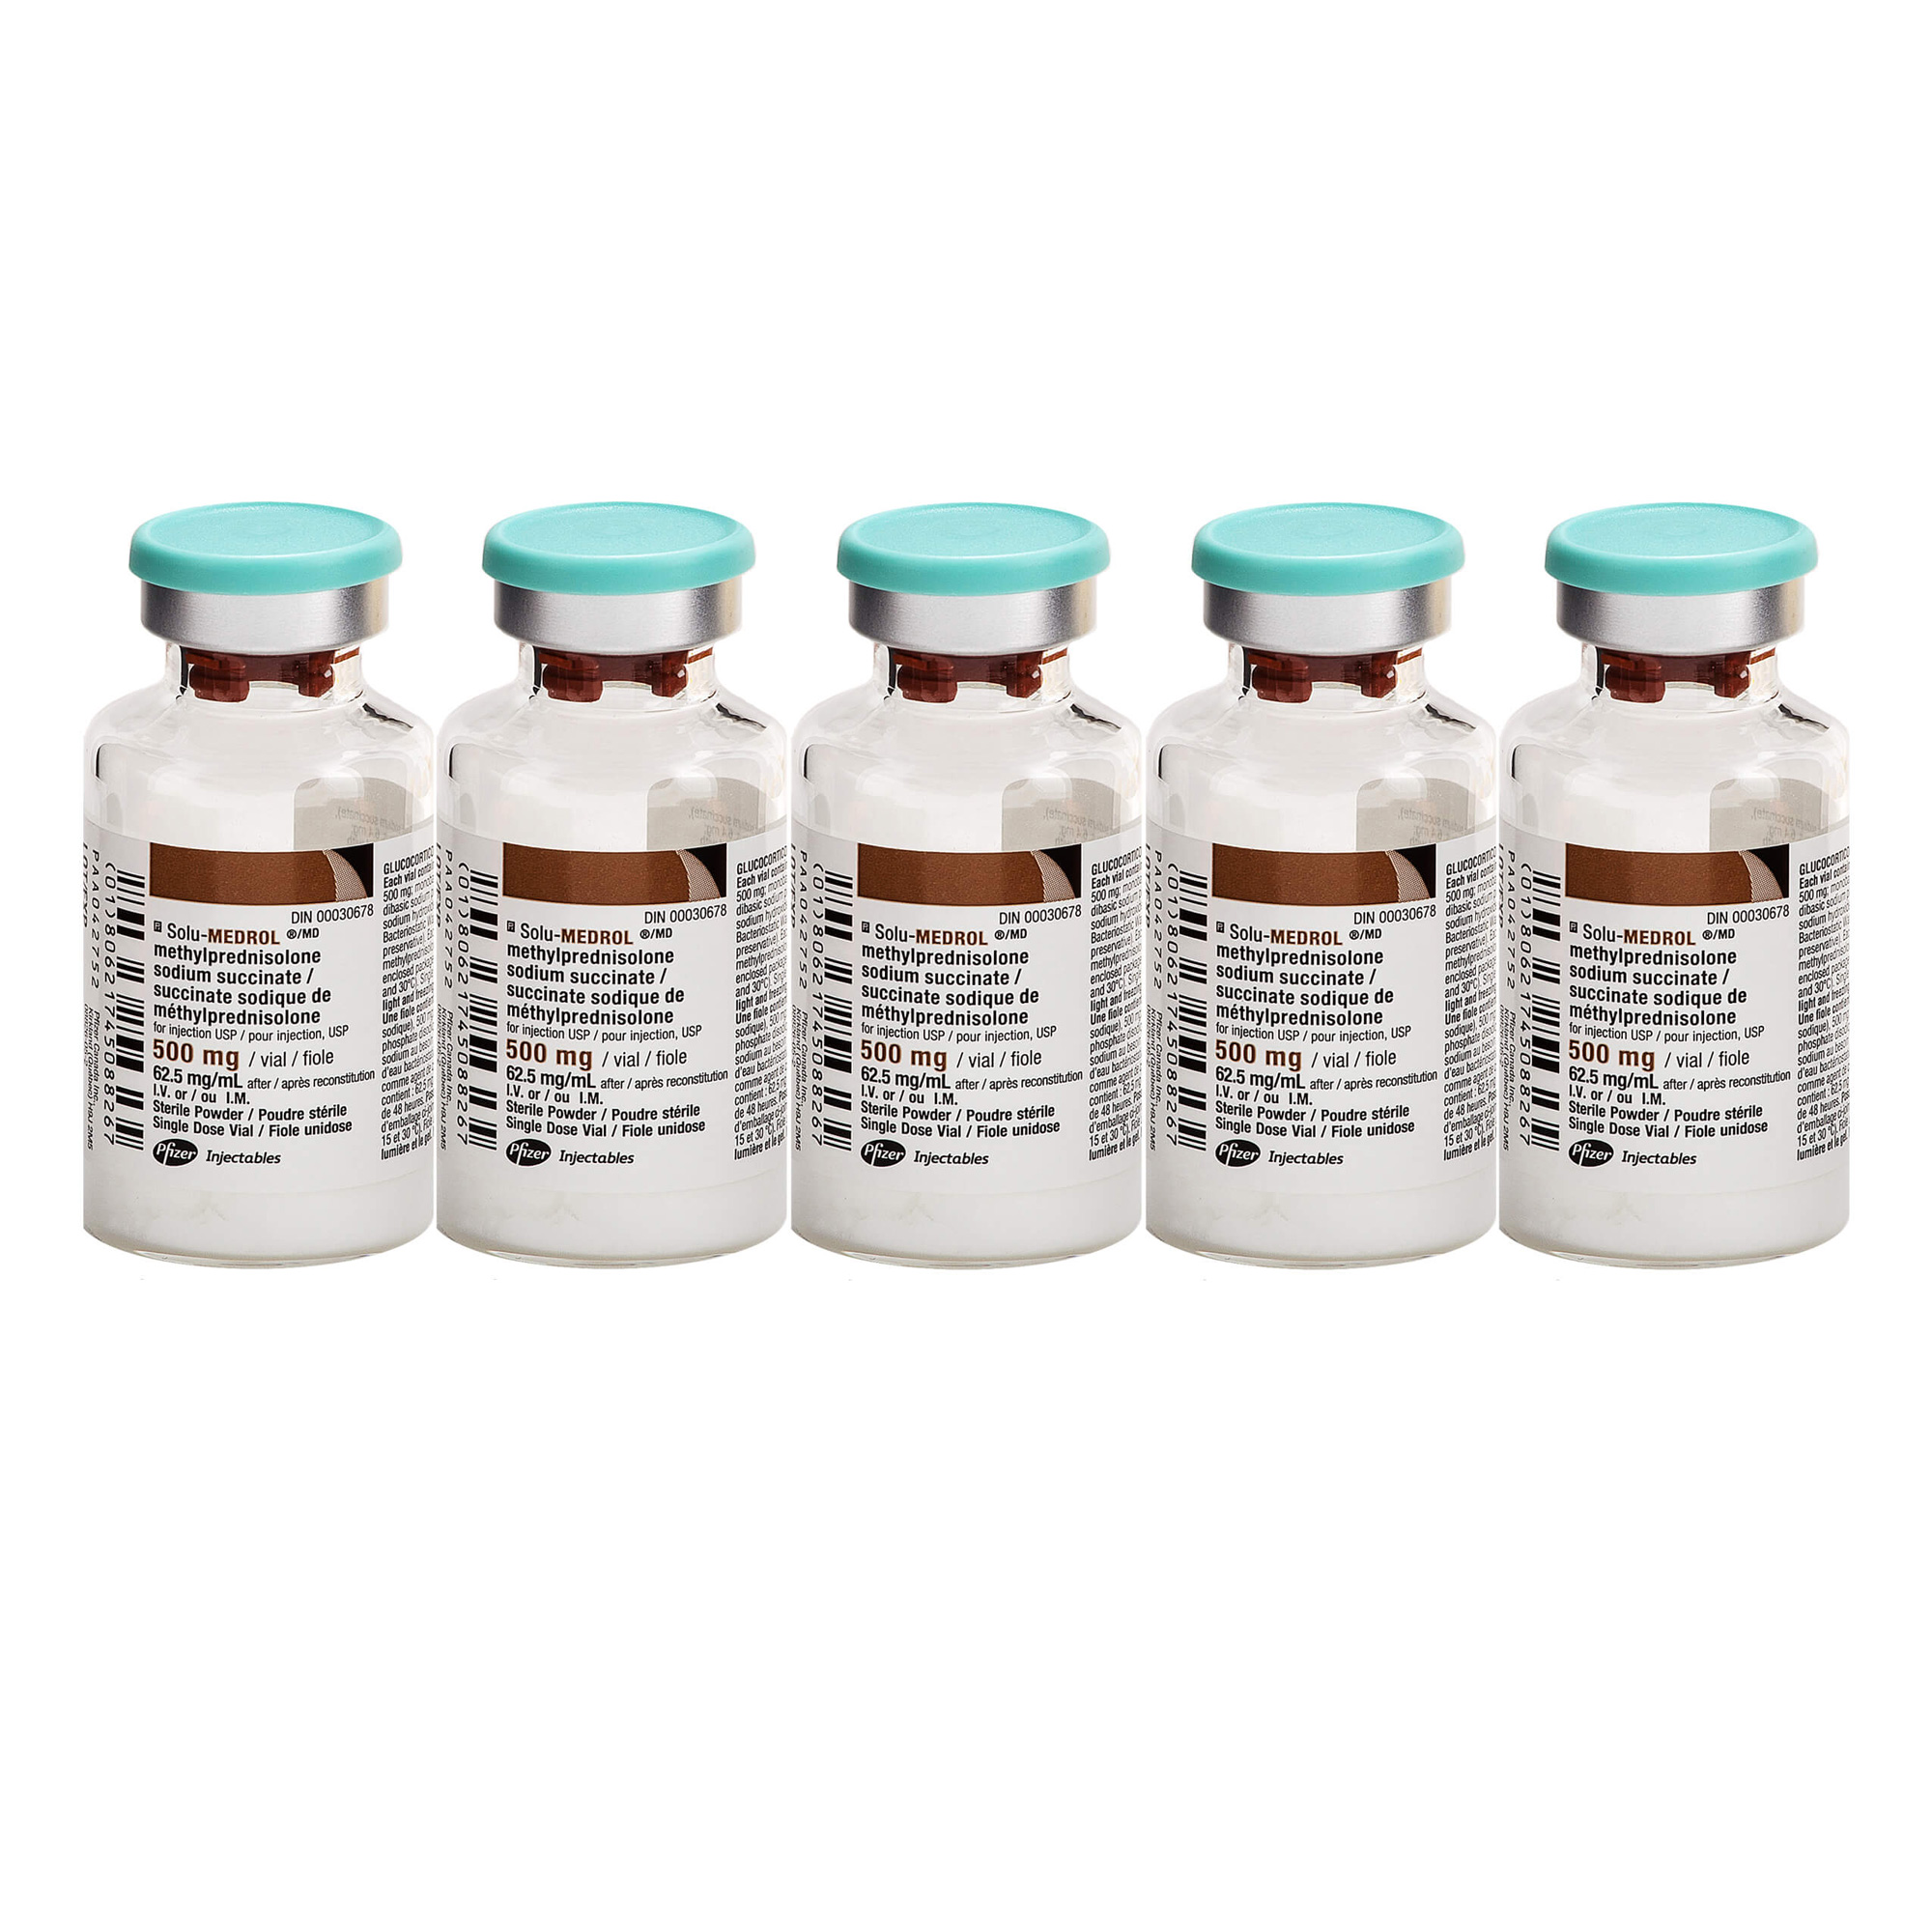 9576---Solu-Medrol-500-mg-vial---5_1_0.jpg